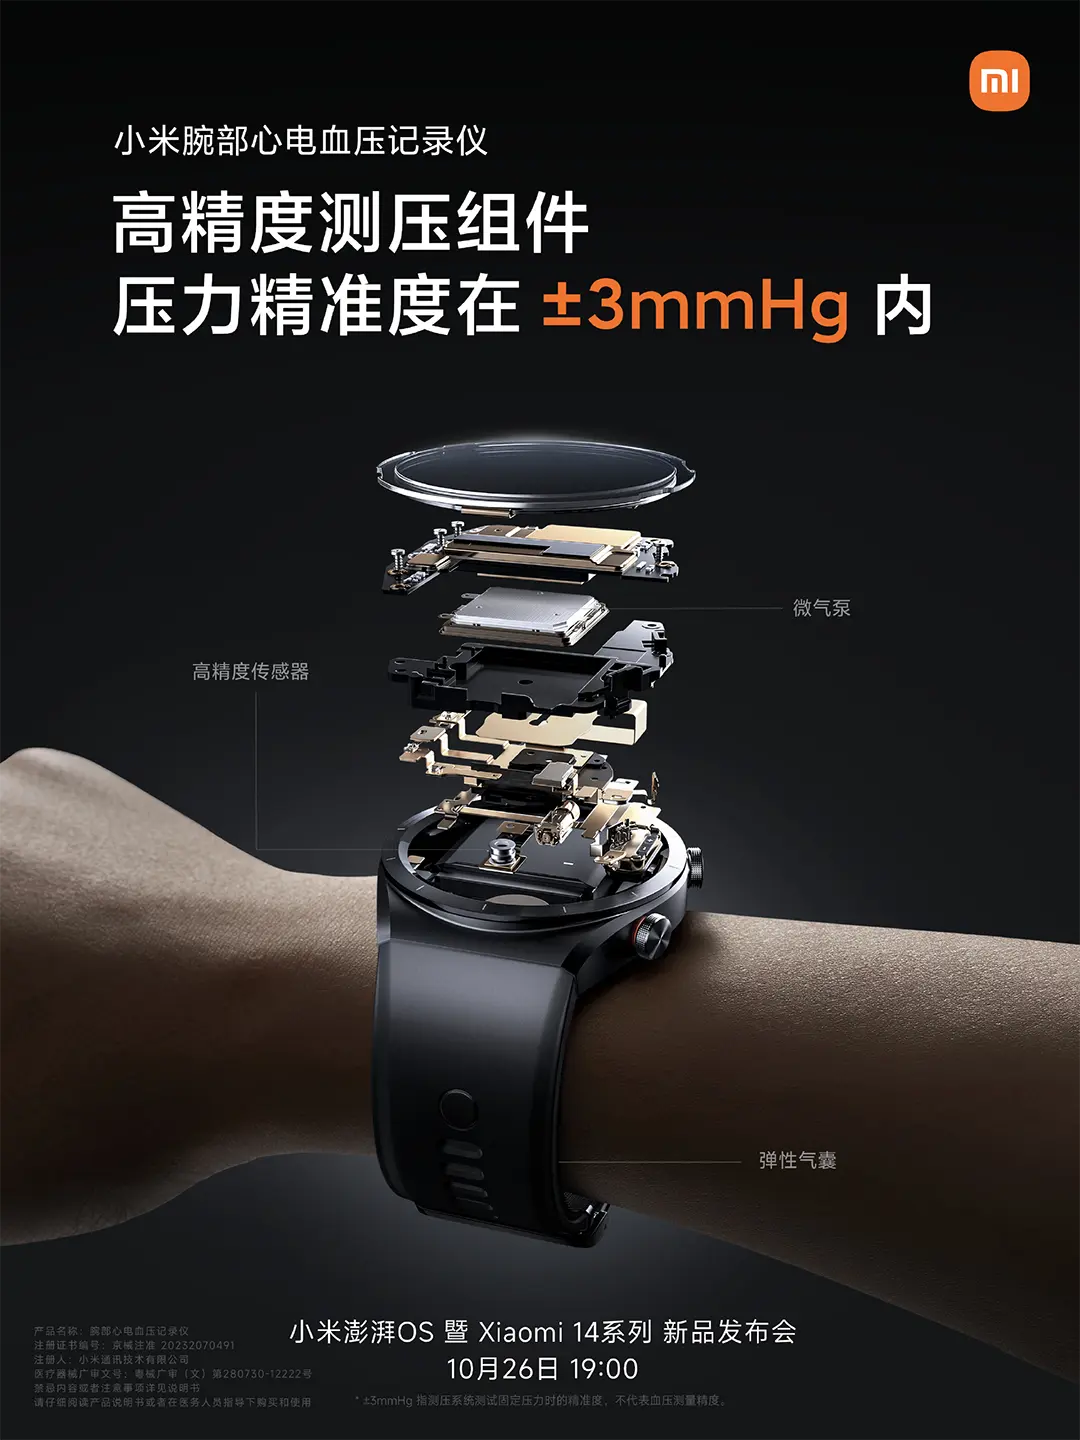 EKG és vérnyomásmérés is lesz a Xiaomi új órájában